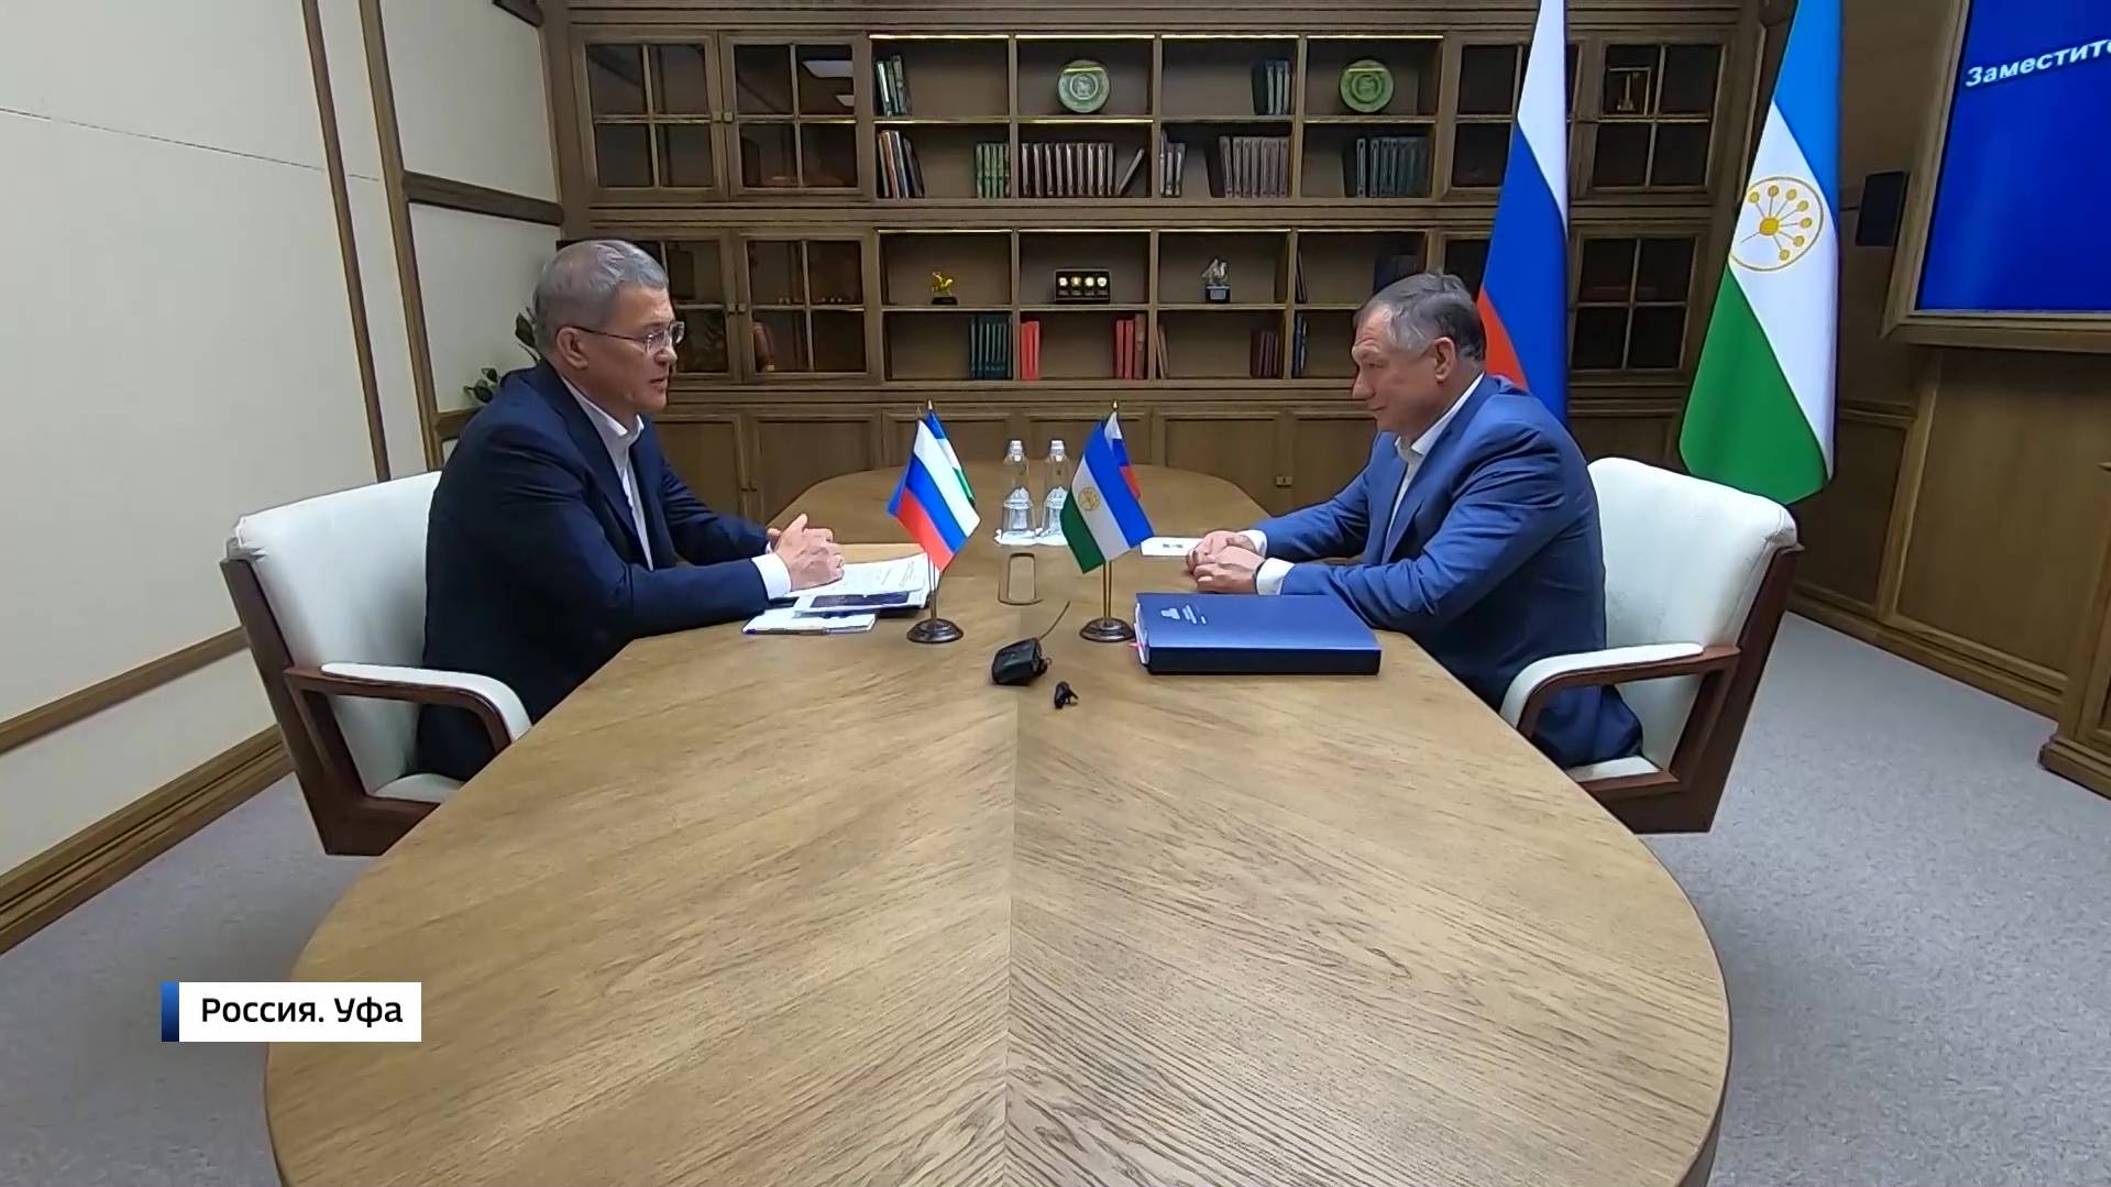 Вице-премьер российского правительства Марат Хуснуллин посетил Башкирию: сюжет "Вестей"